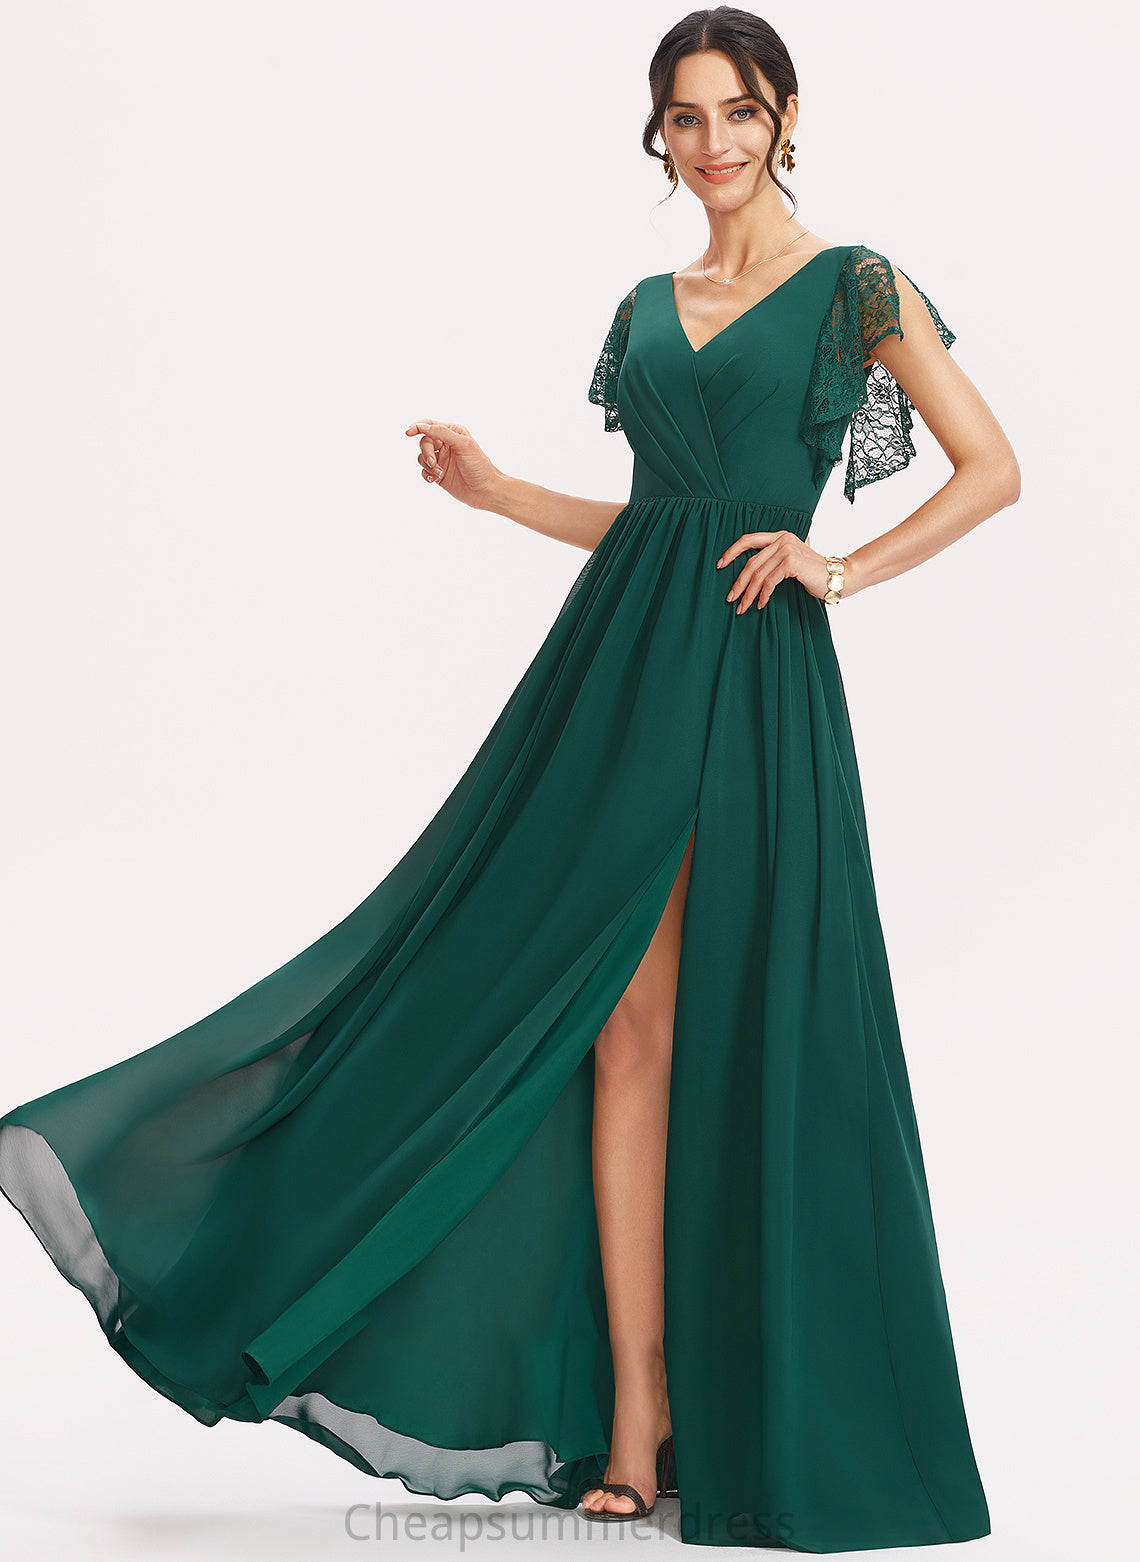 Neckline V-neck SplitFront A-Line Floor-Length Fabric Length Silhouette Lace Embellishment Dayami A-Line/Princess